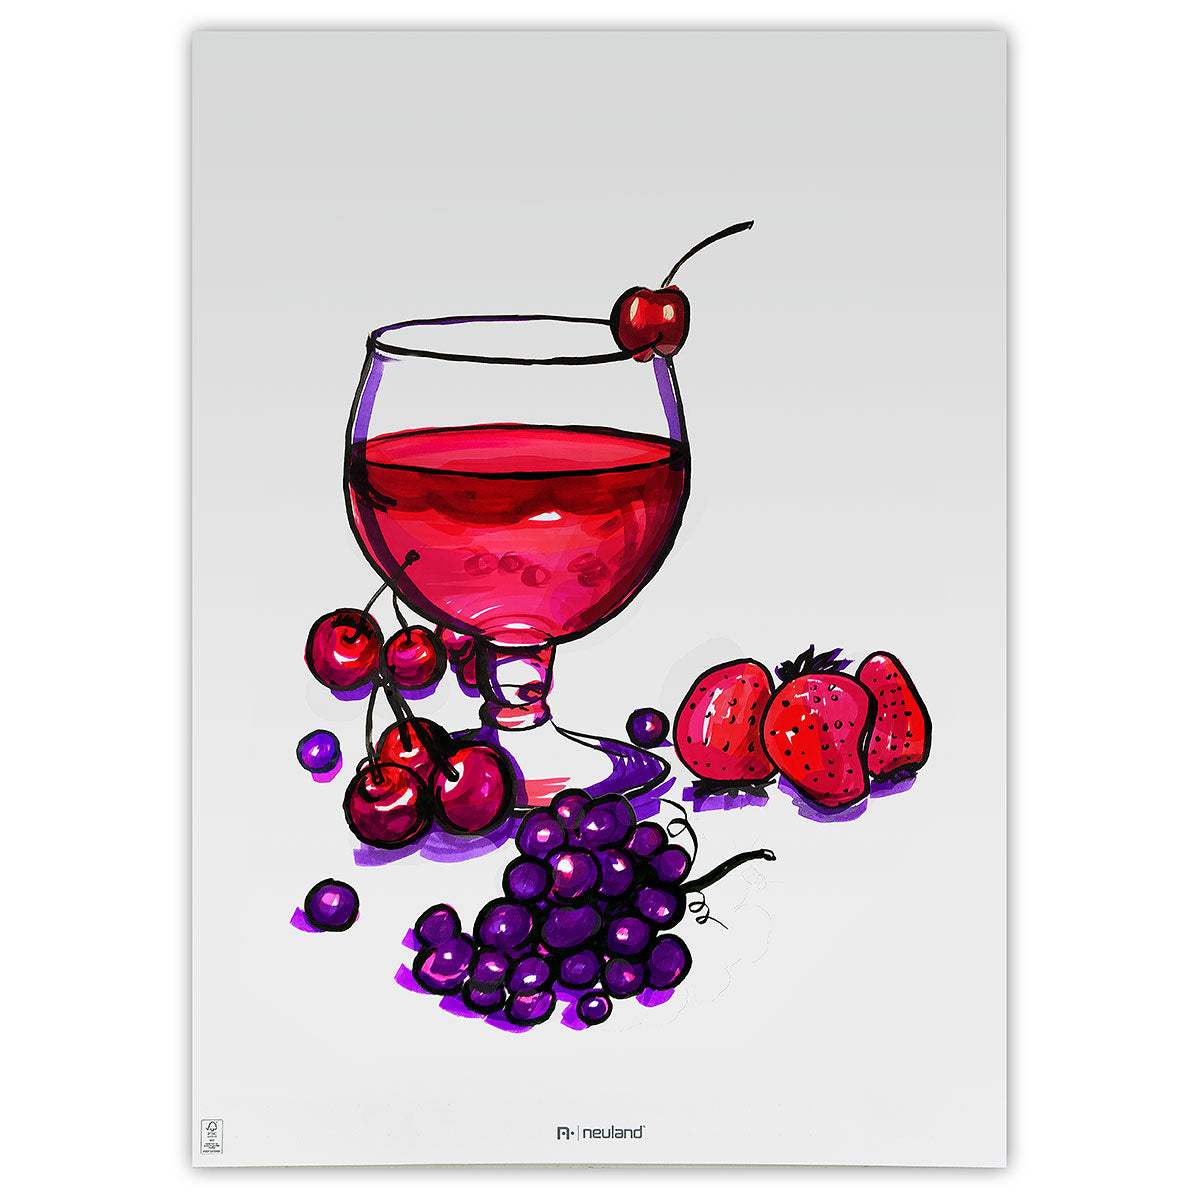 Neuland BigOne® Art, 5/color sets- set no. 13 wild berries